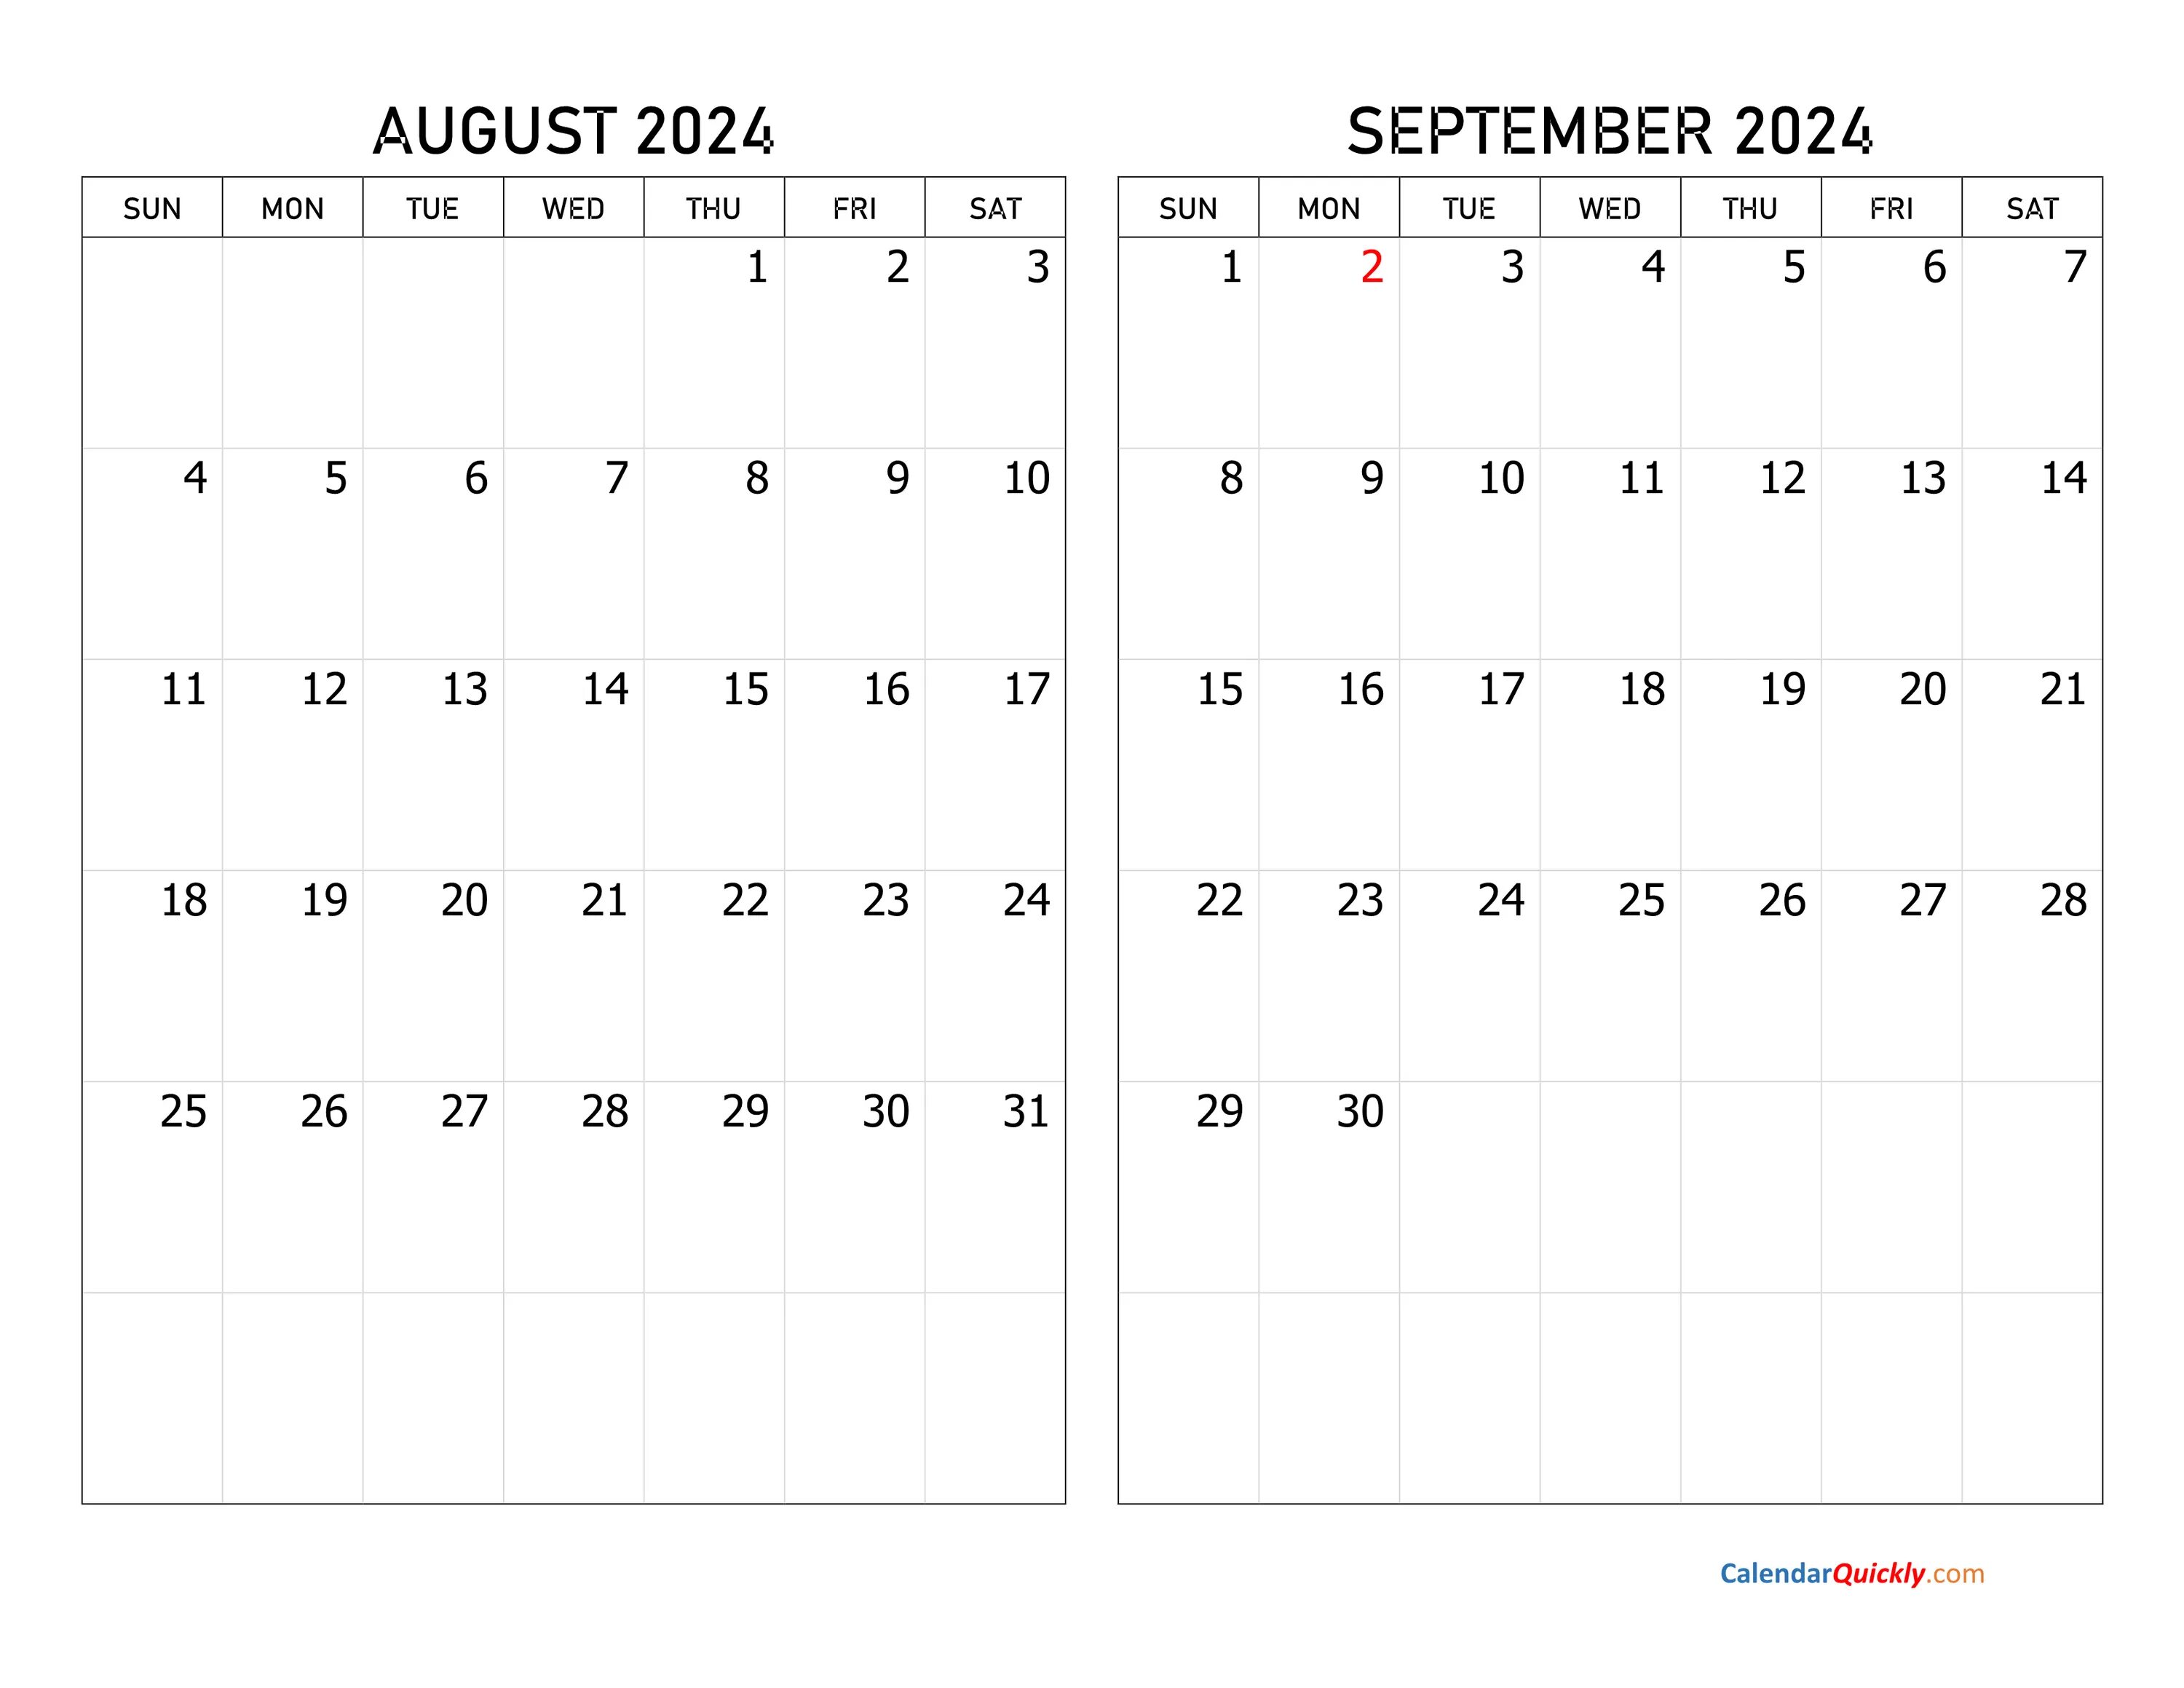 Календарь декабрь 2022. Календарь сентябрь октябрь 2022. Календарь октябрь ноябрь 2022. Календарь декабрь 2022 январь 2023. 15 апреля 2024 какой день